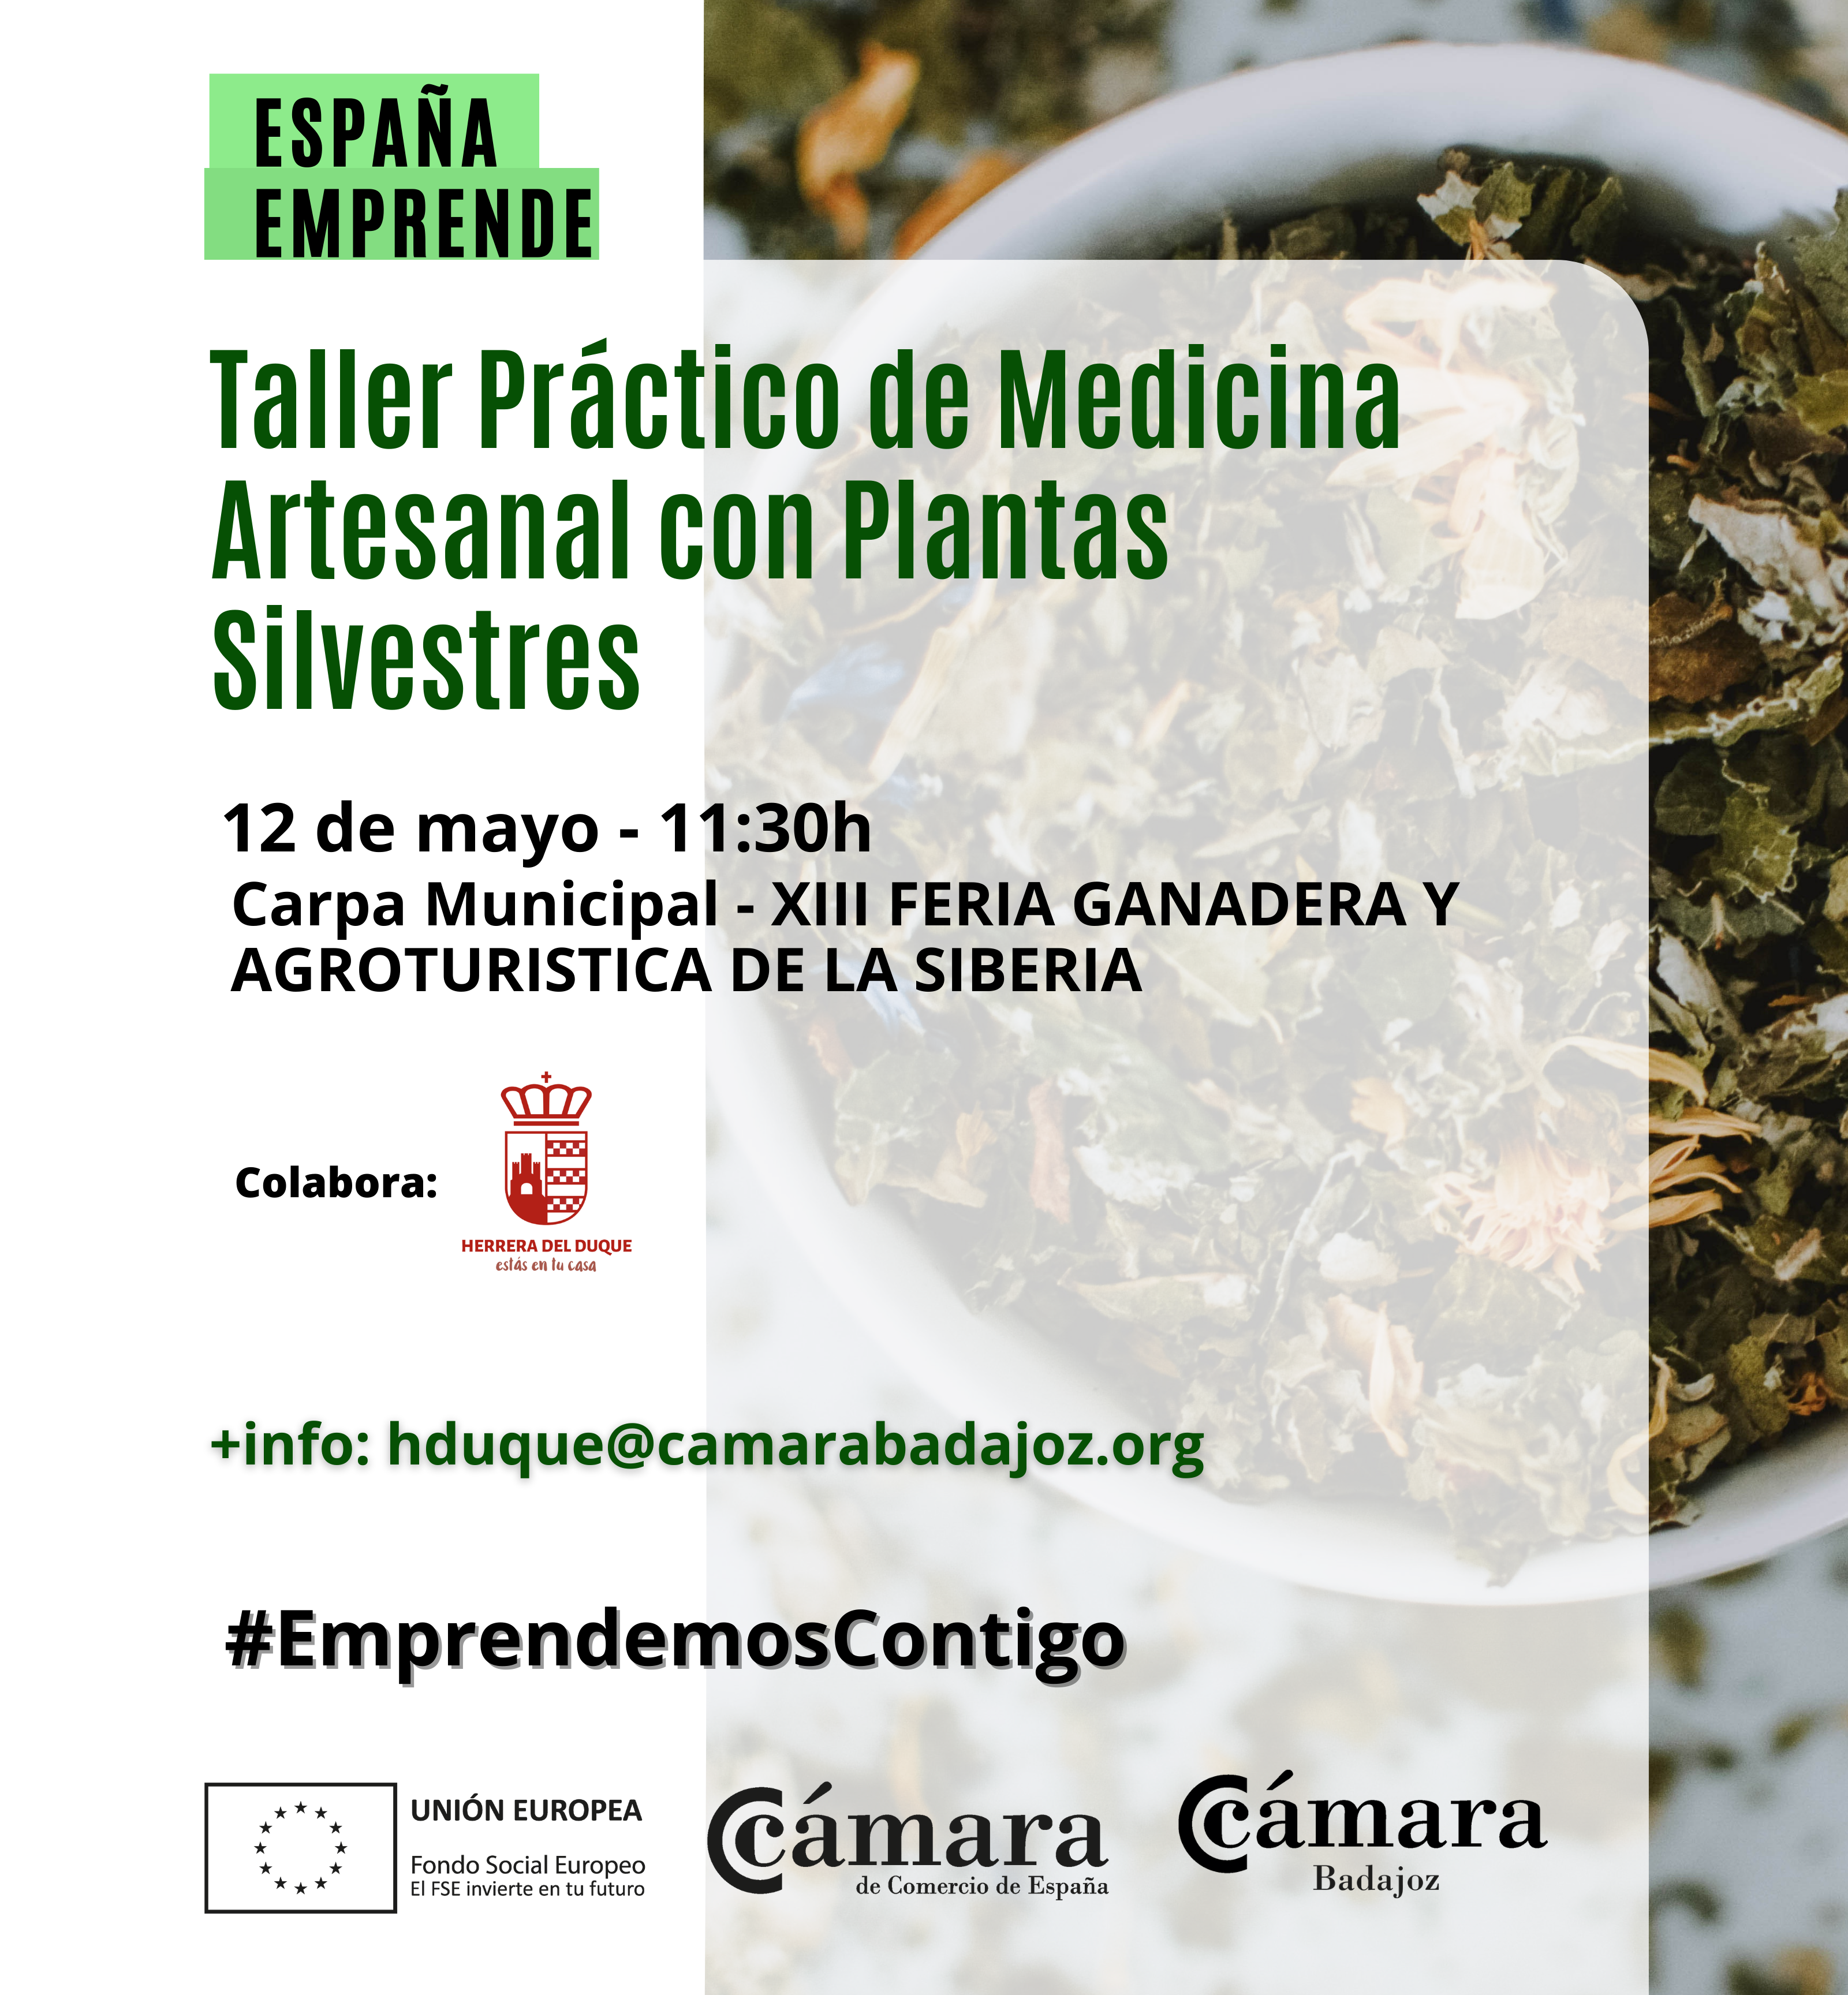 TALLER PRÁCTICO ESPAÑA EMPRENDE: Medicina Artesanal con Plantas Silvestres